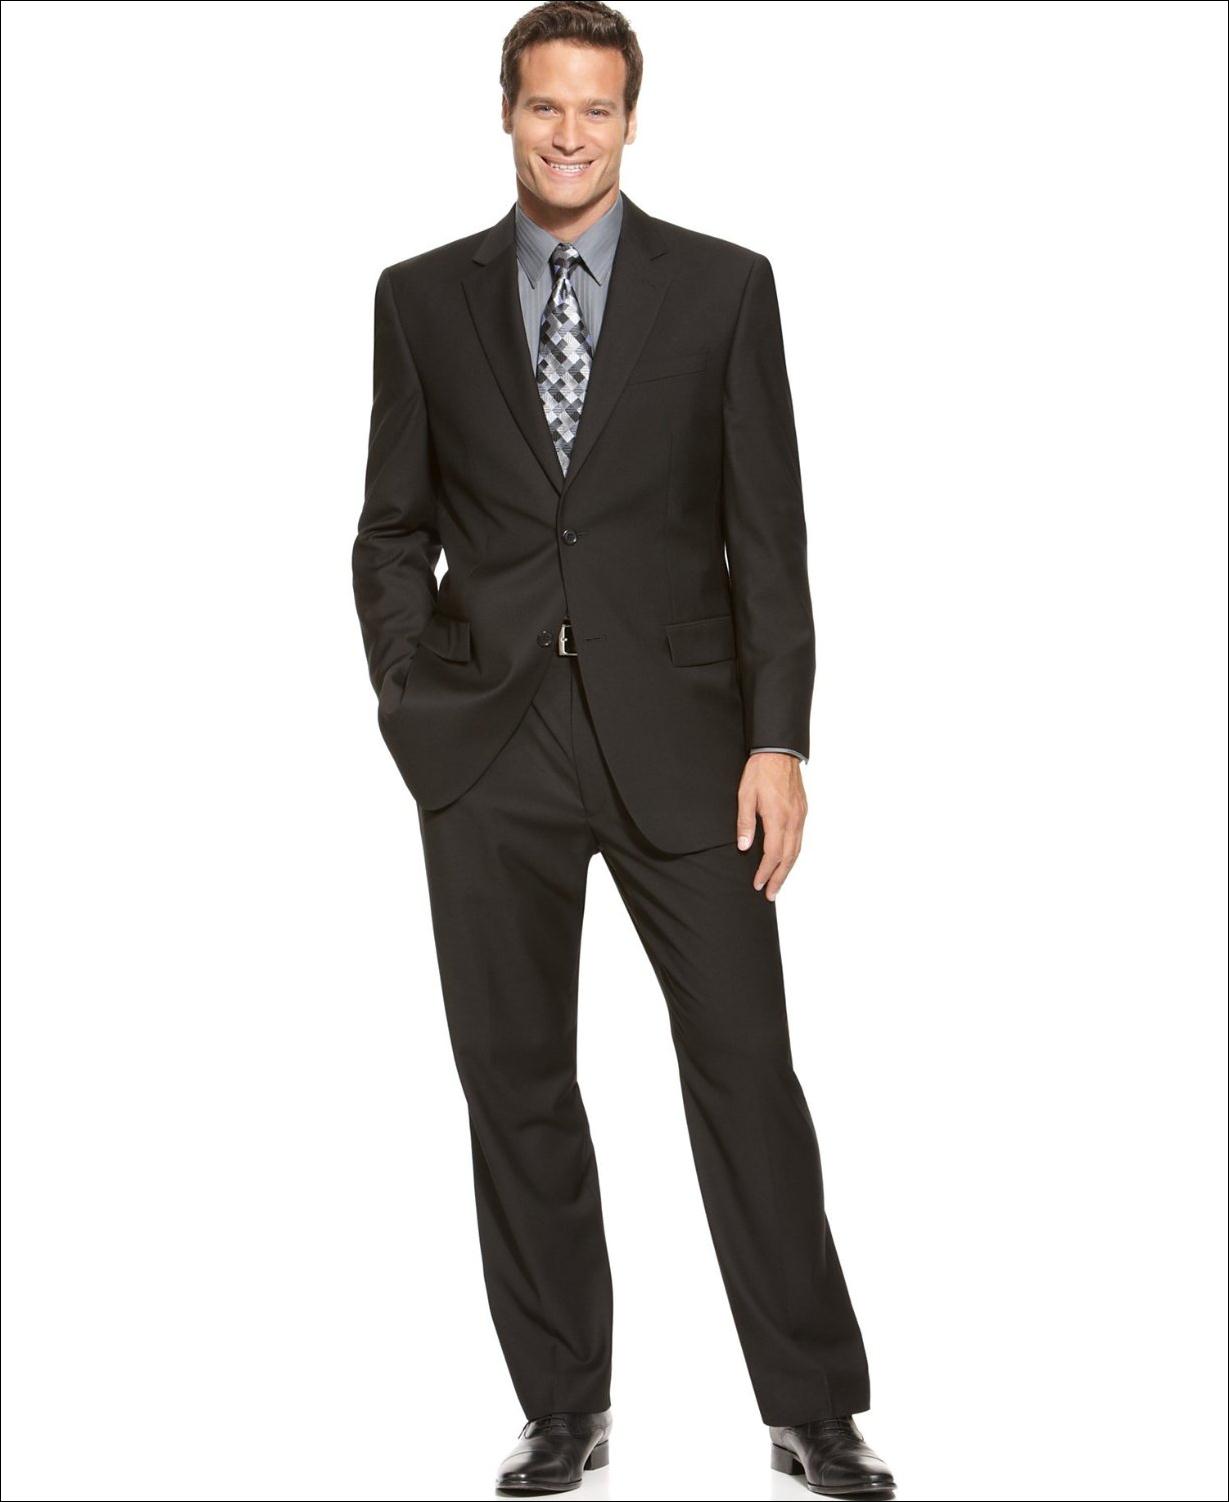 Suit For Men 2014 | Men's Fashion Trend